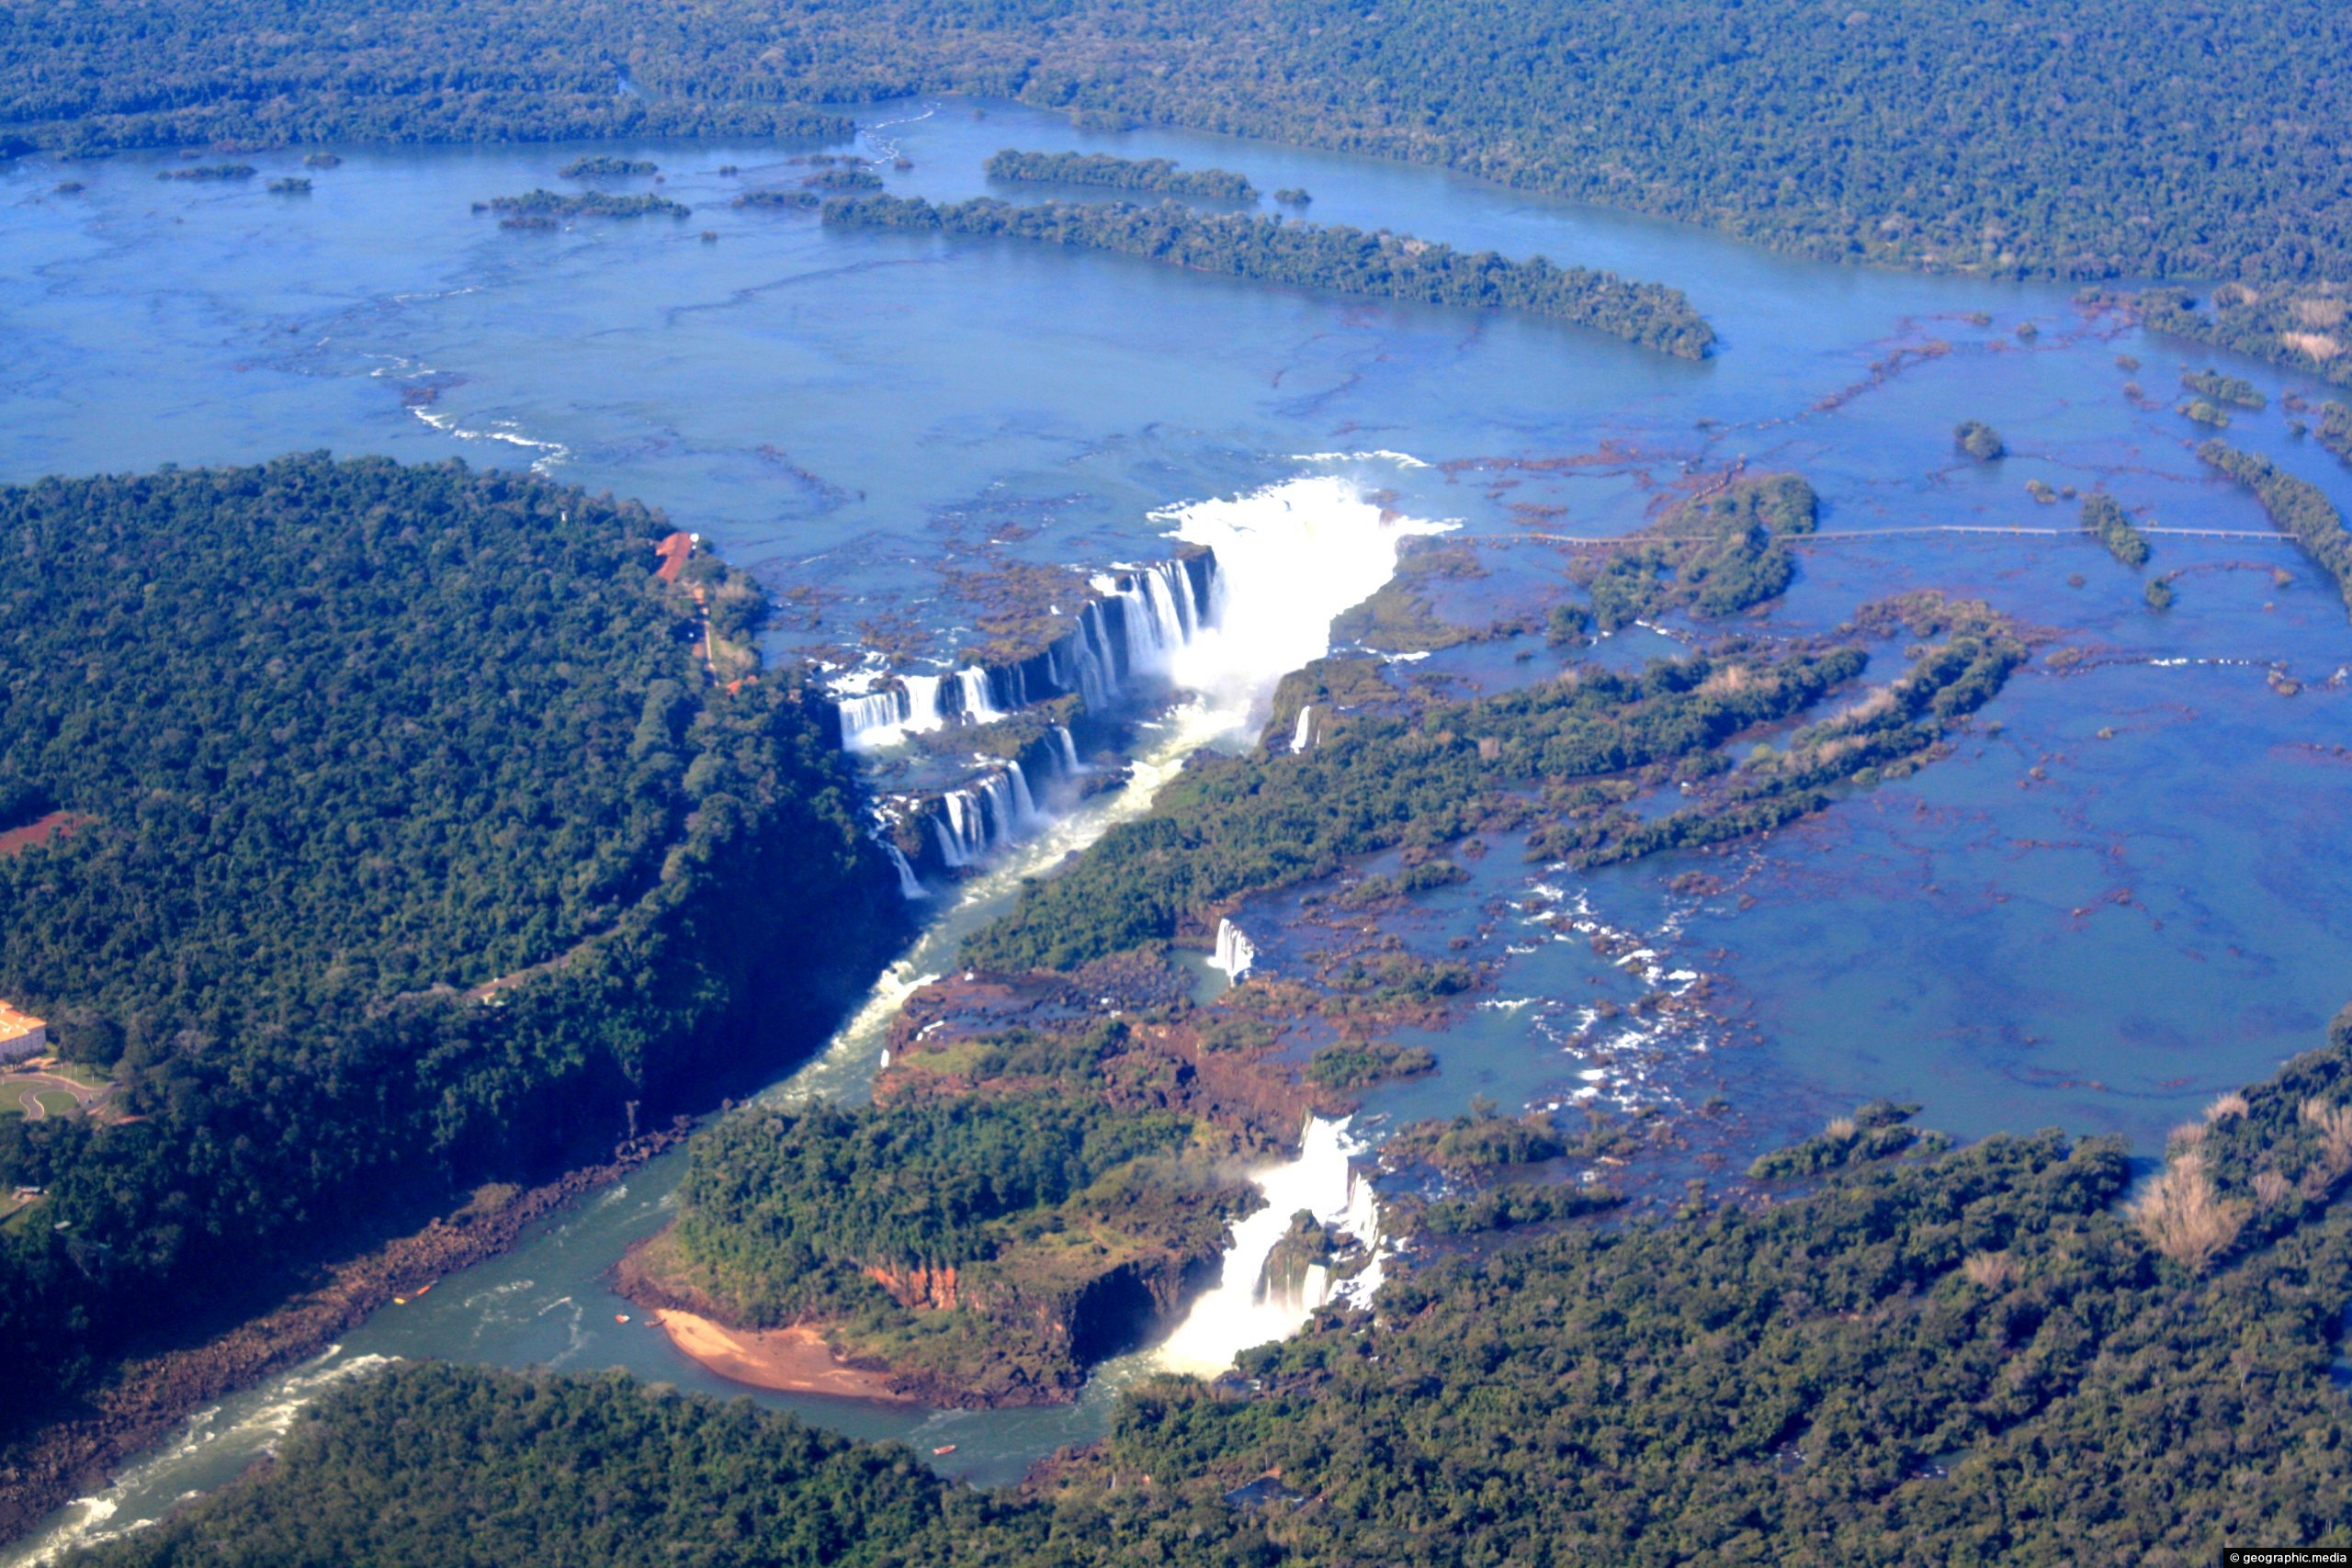 Aerial View of Iguazu Falls